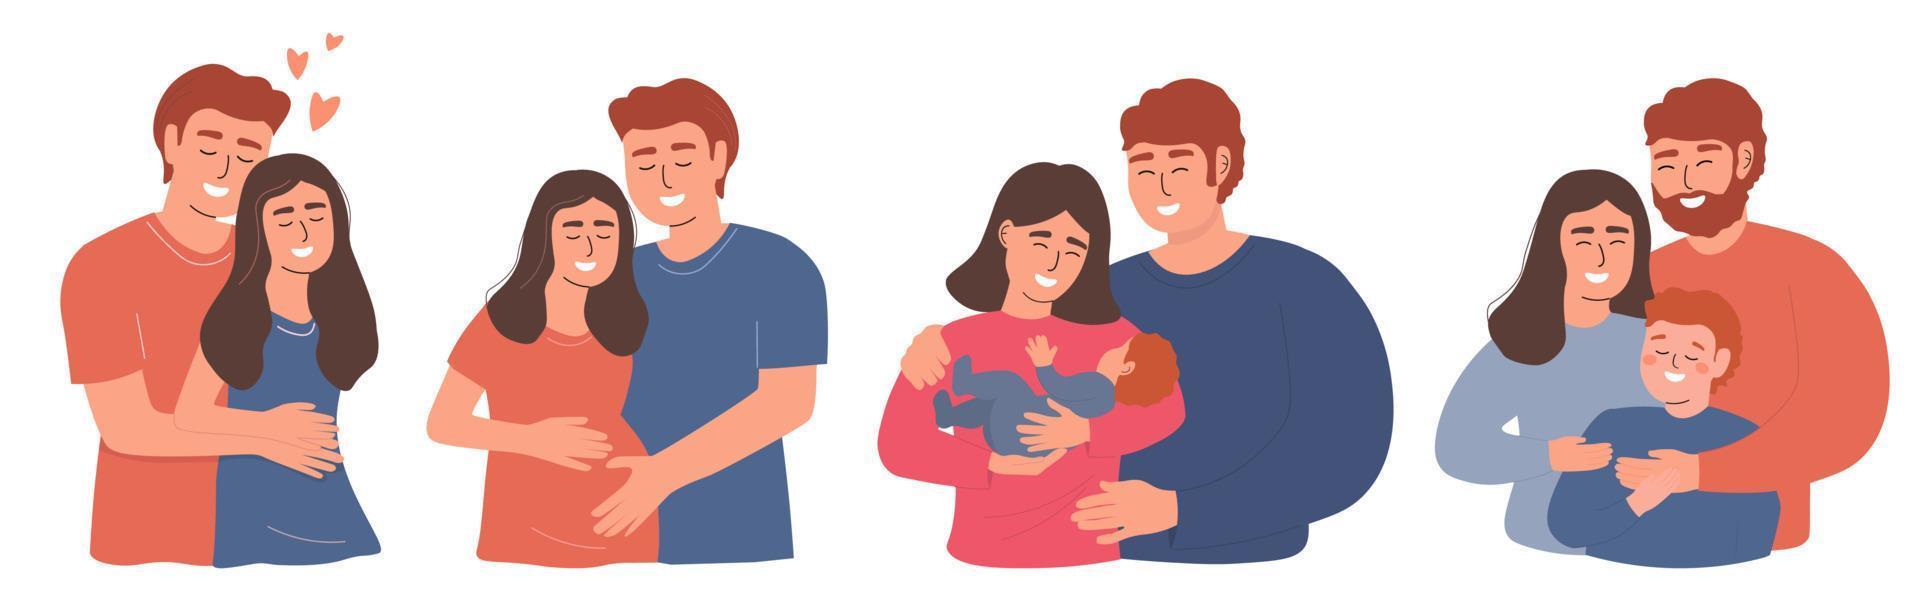 um conjunto de retratos de família feliz. um jovem casal está apaixonado, uma mulher grávida, uma mãe e um pai com um bebê. gráficos vetoriais. vetor